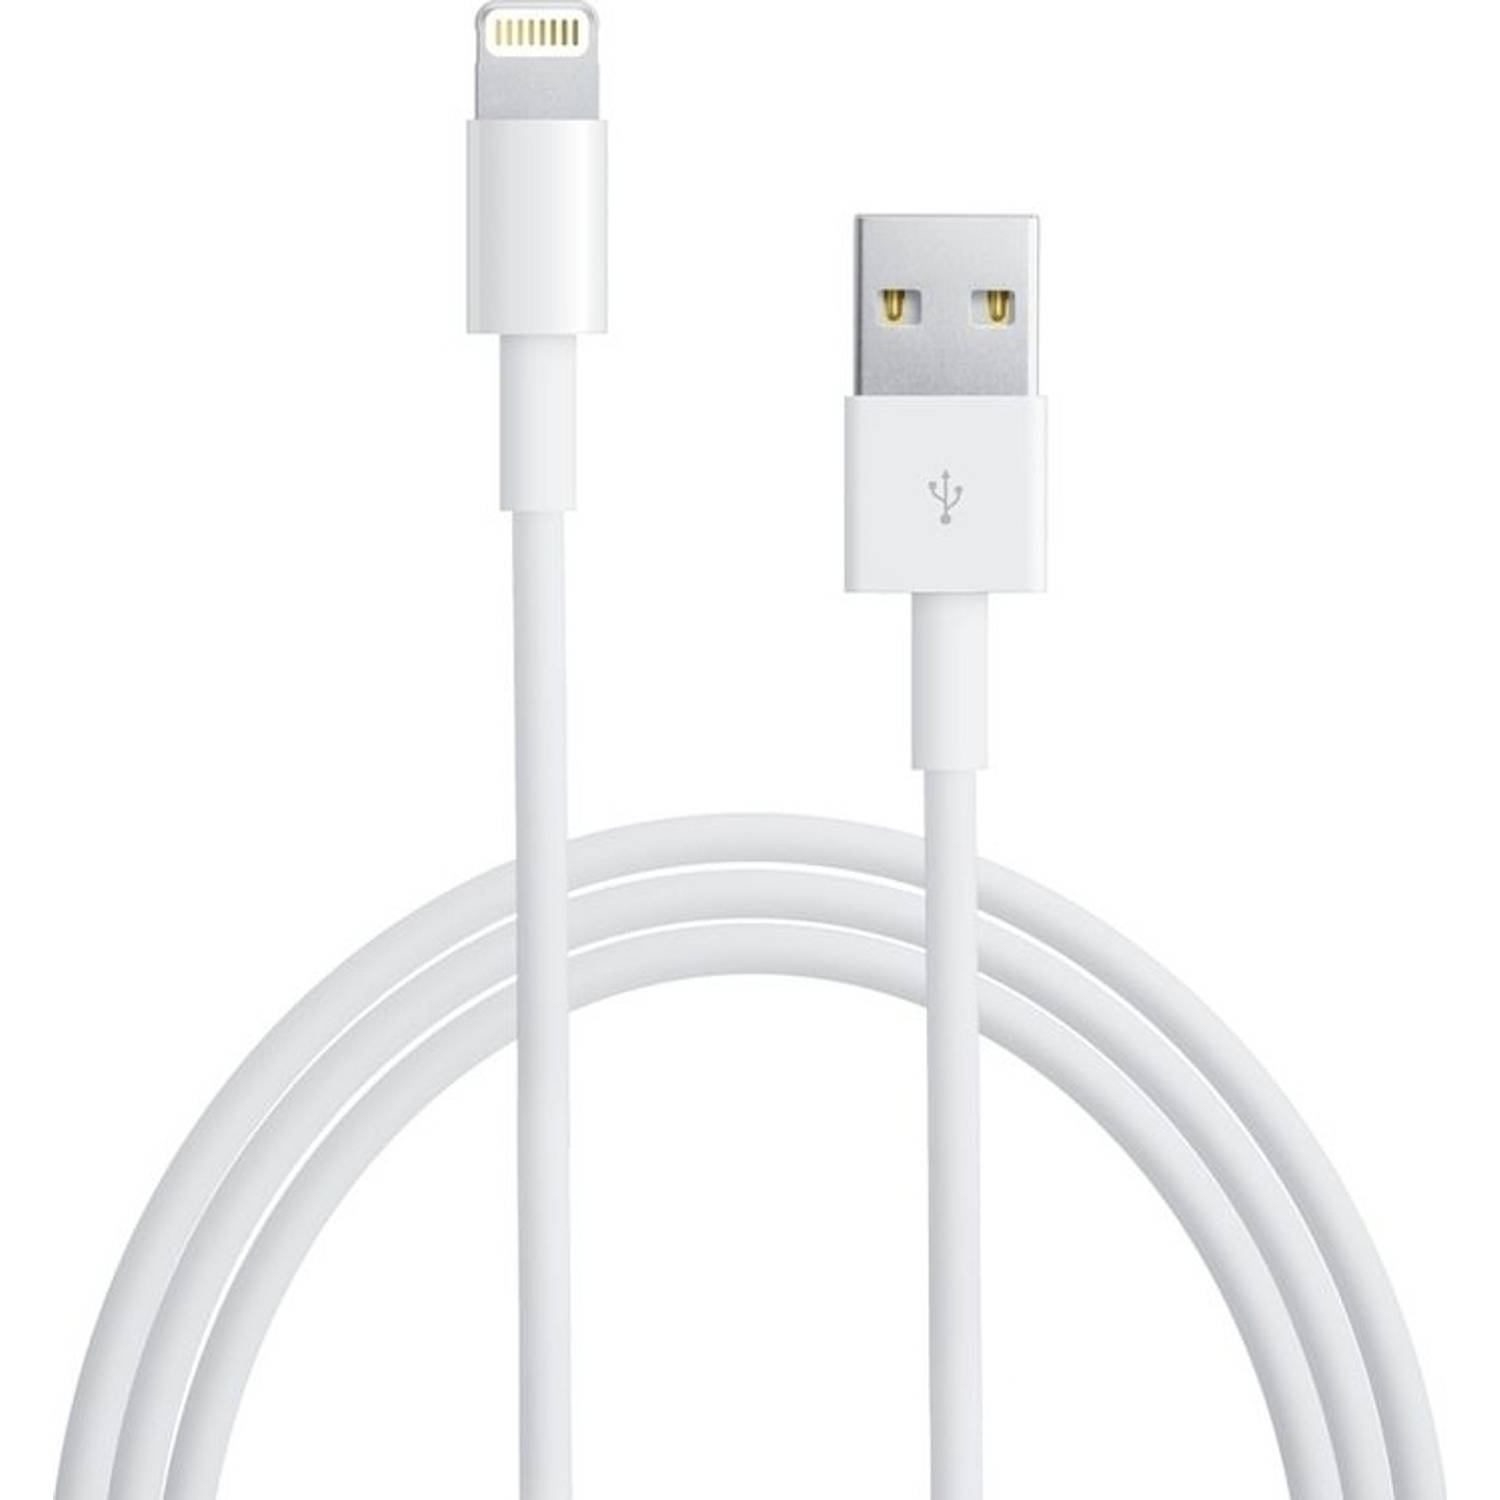 anders Vergemakkelijken Kameel Lightning kabel voor Apple iPhone & iPad - 2 Meter | Blokker